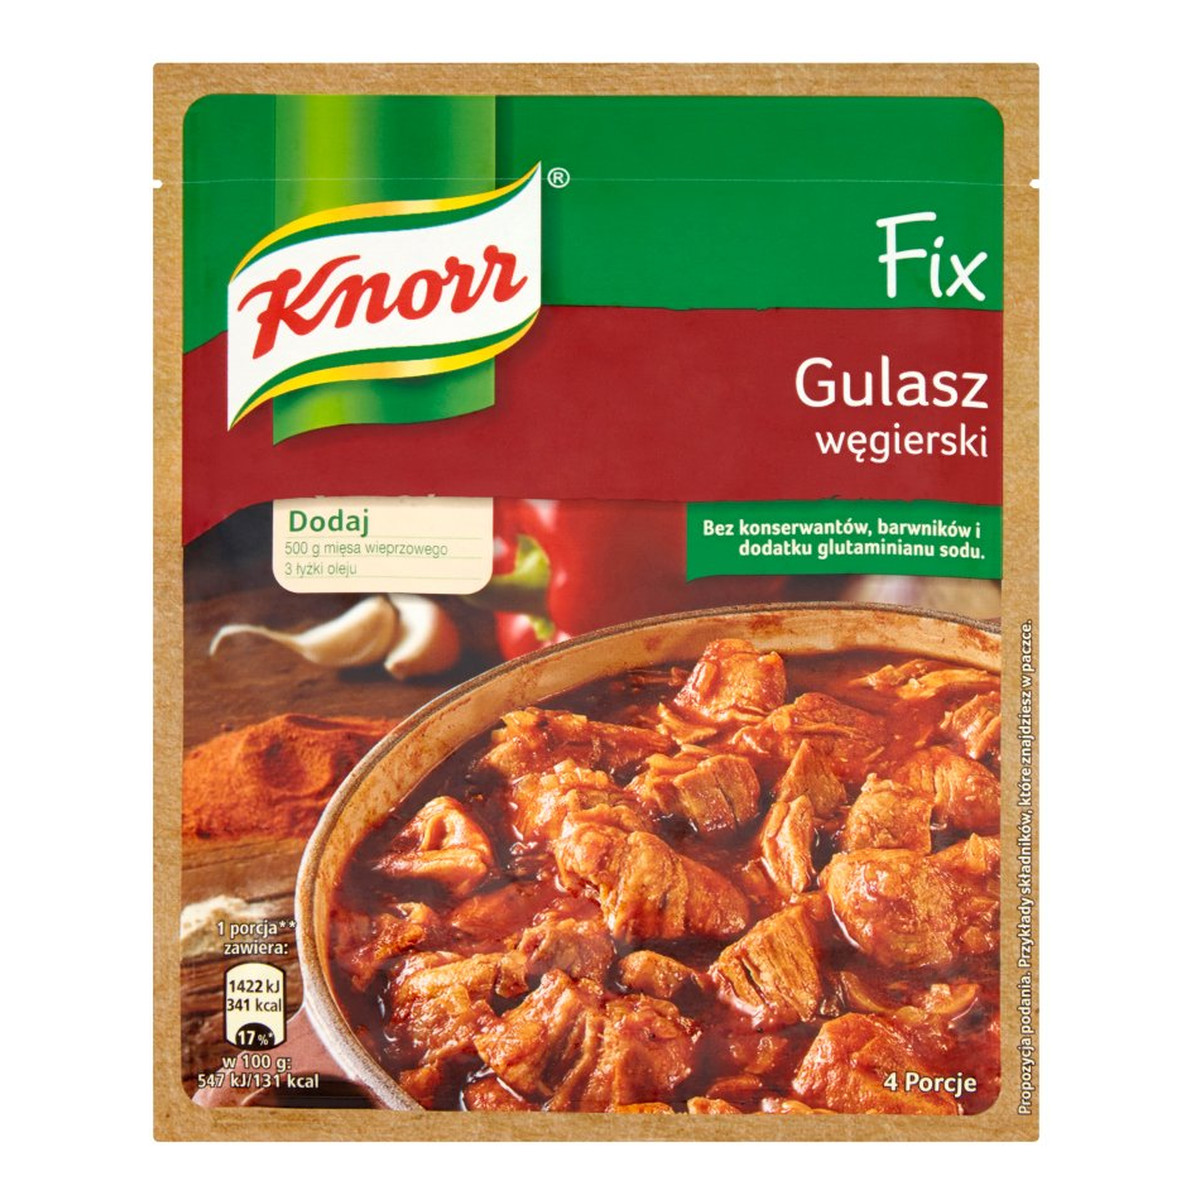 Knorr Fix Gulasz węgierski 51g